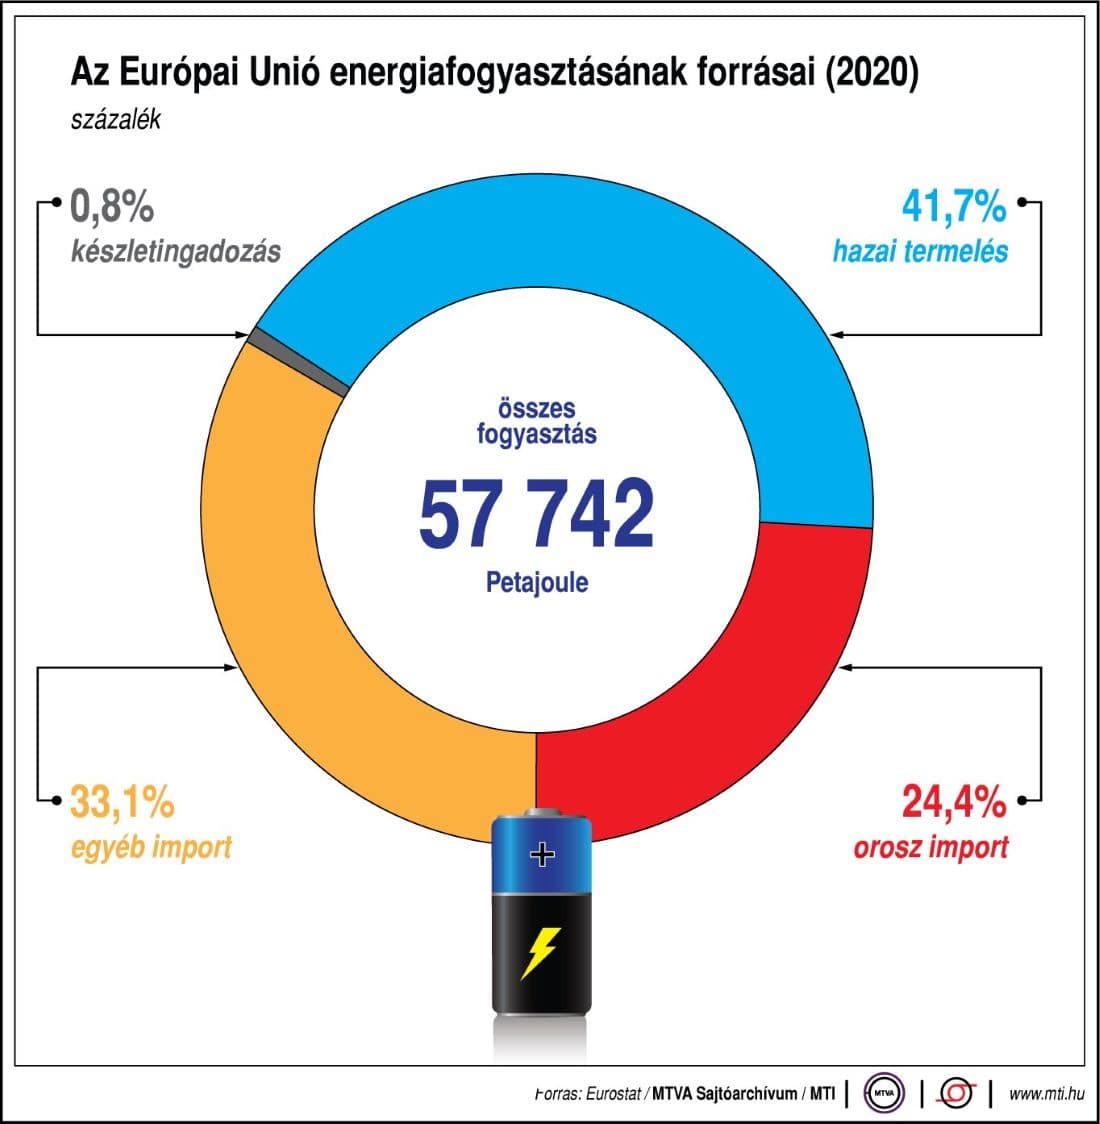 MTI ábrájából látszik az Európai Unió energiafogyasztásának negyede orosz importból származik. 